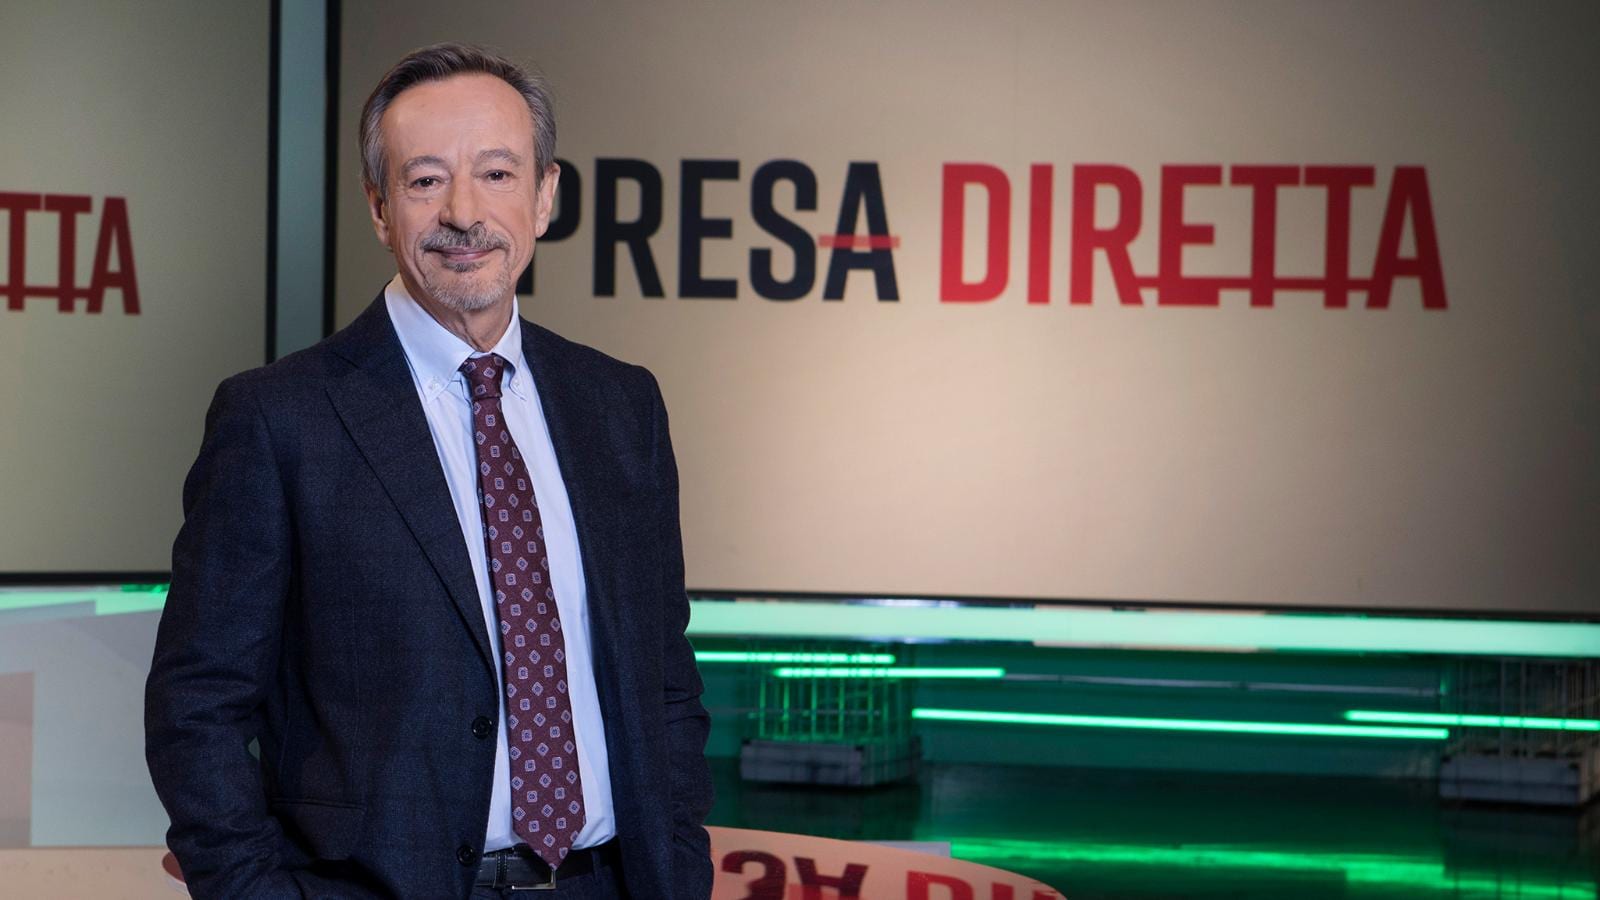 Stasera in TV: Il "Prezzo ingiusto" a PresaDiretta - Su Rai3 l'ultima puntata della stagione. Ospite la ministra Bellanova